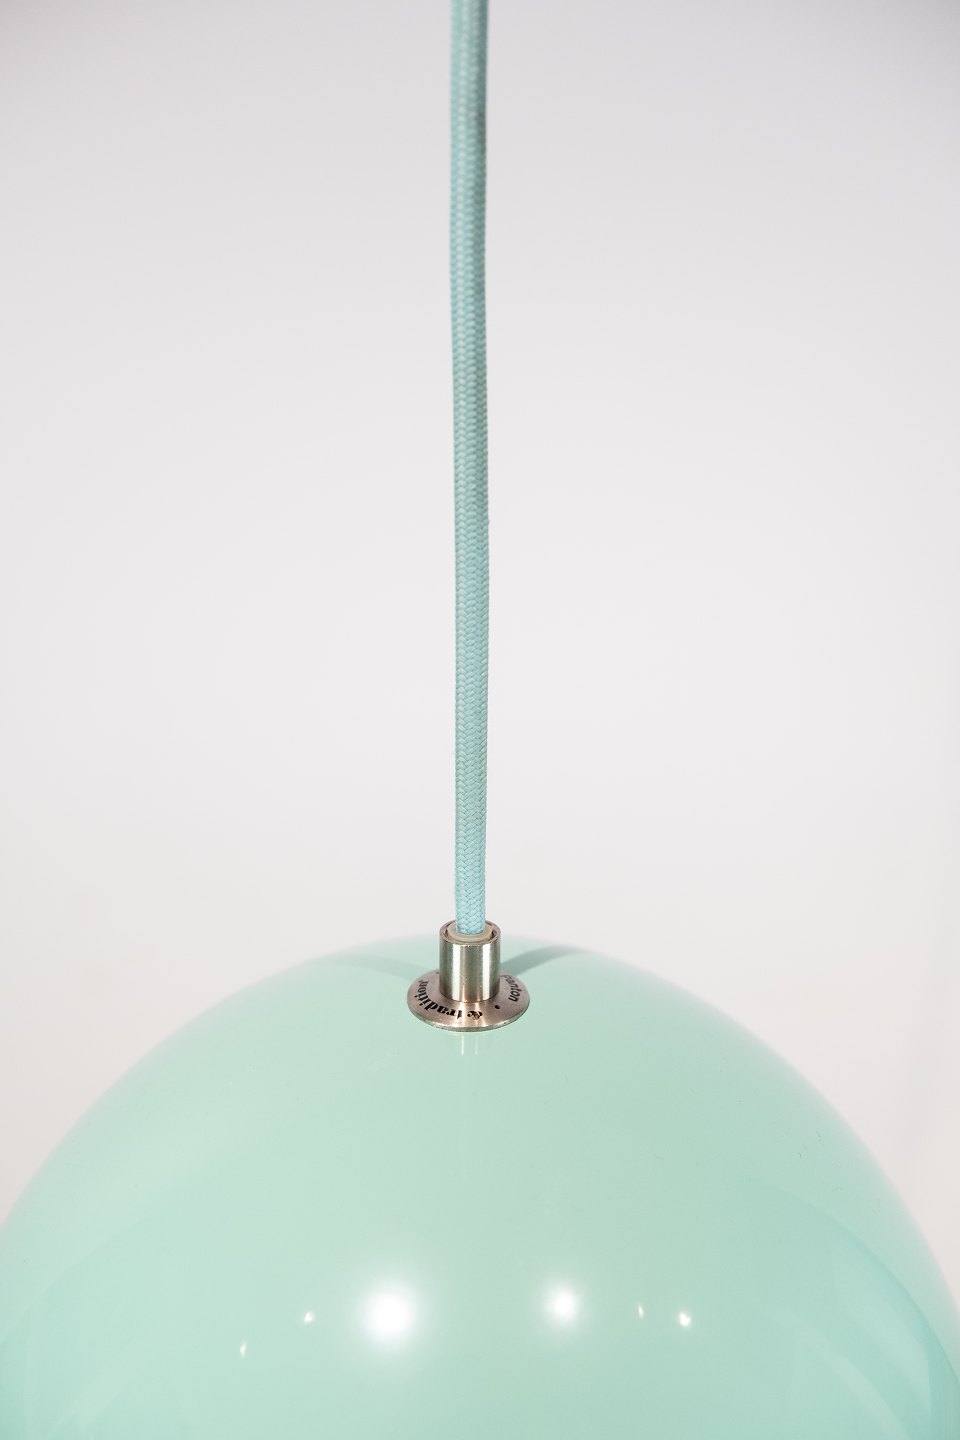 th sende Datum Turkis Flowerpot, model VP1, pendel designet af Verner Panton i 1968 og  fremstil - Osted Antik & Design